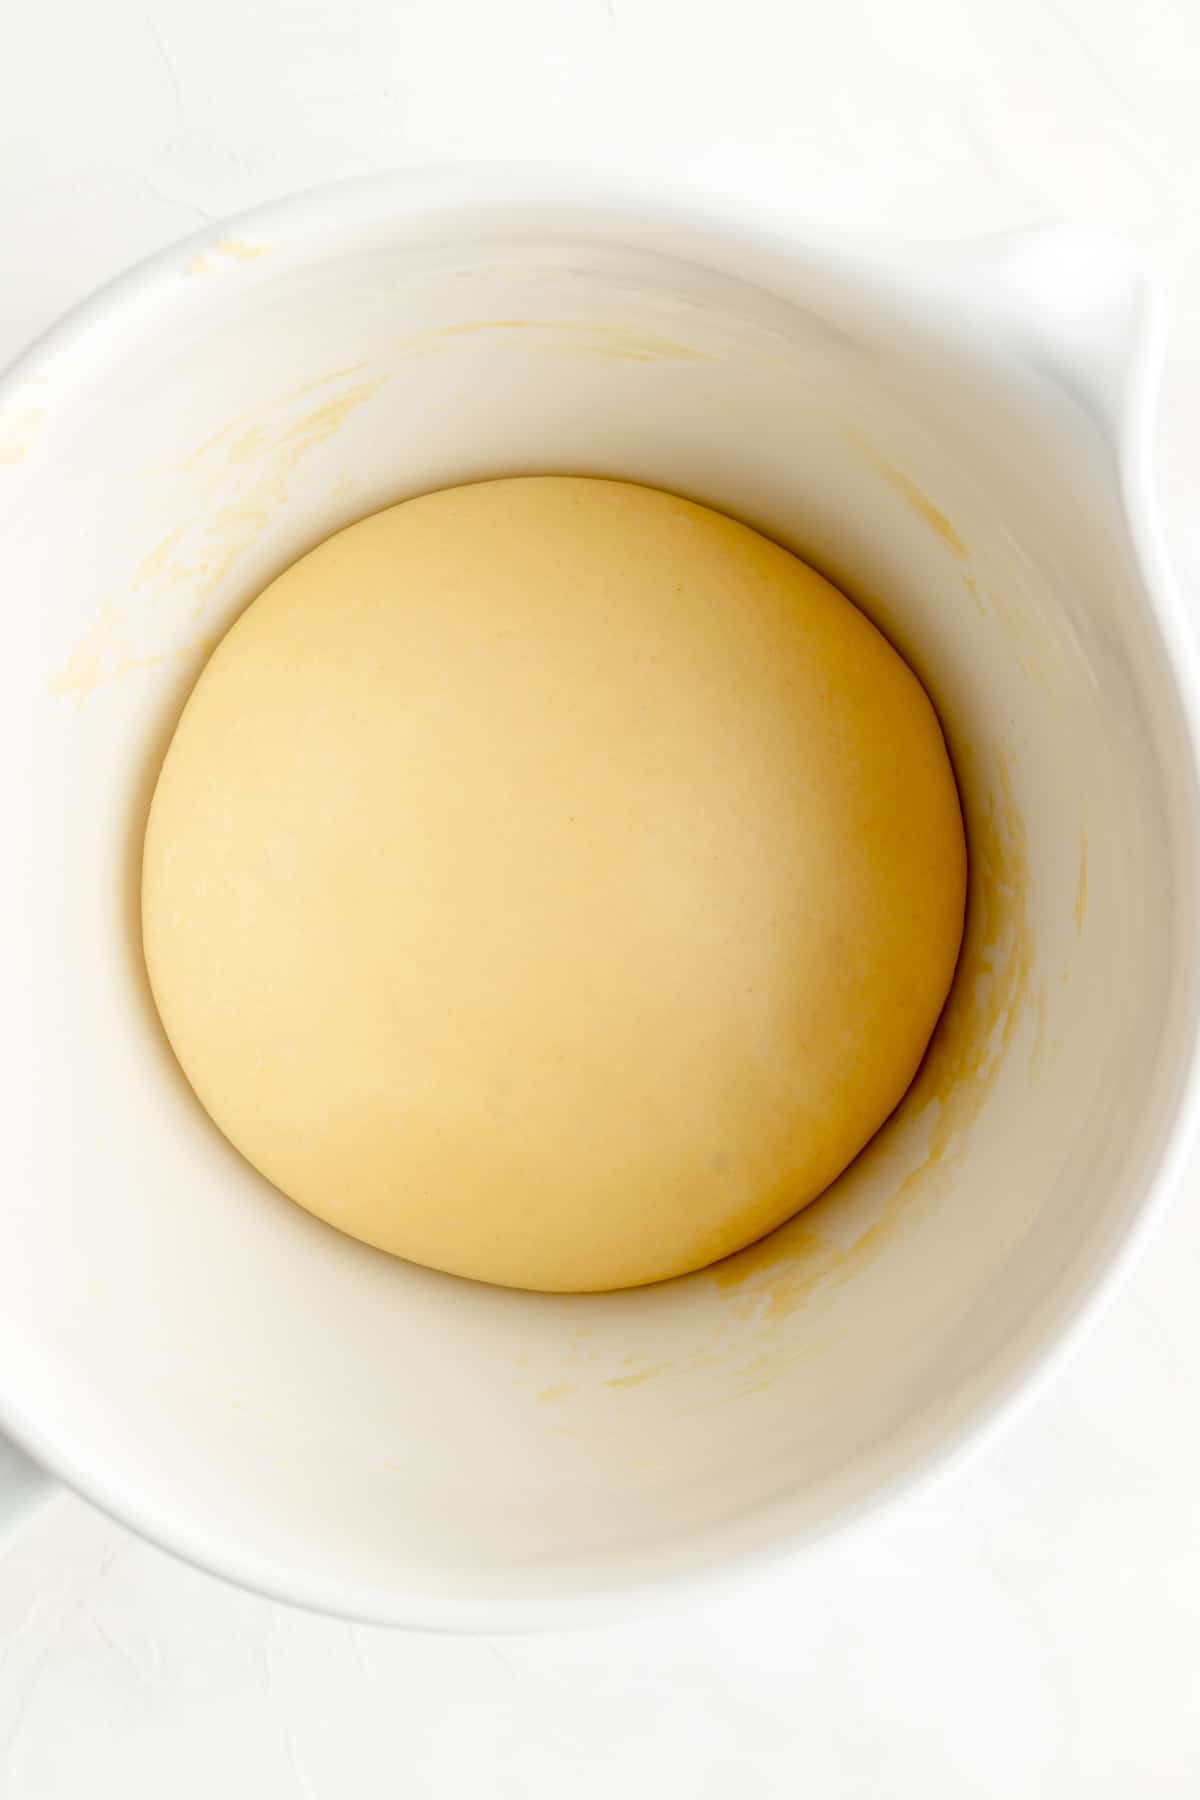 Risen ball of brioche dough in white bowl.